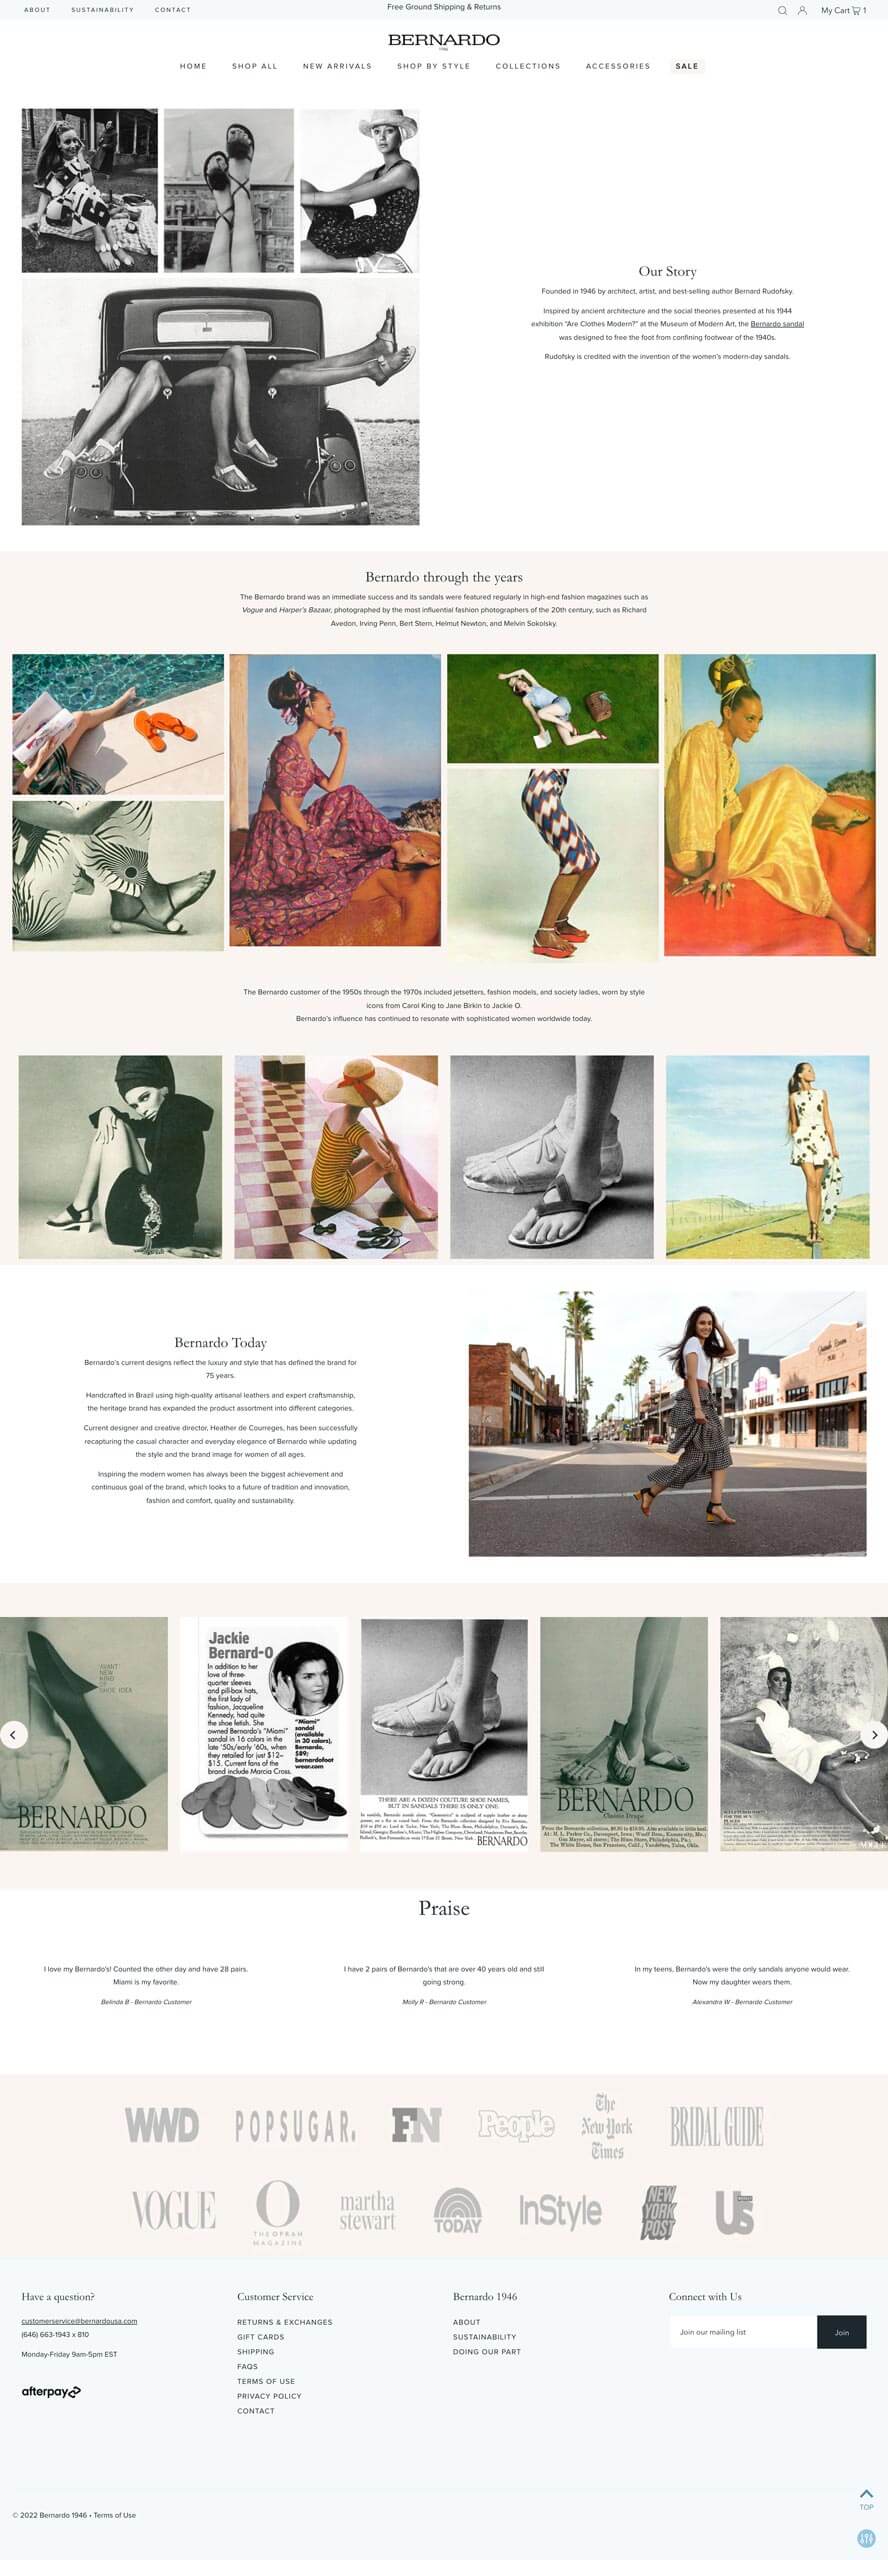 Bernardo 1946 - Shopify Website Redesign